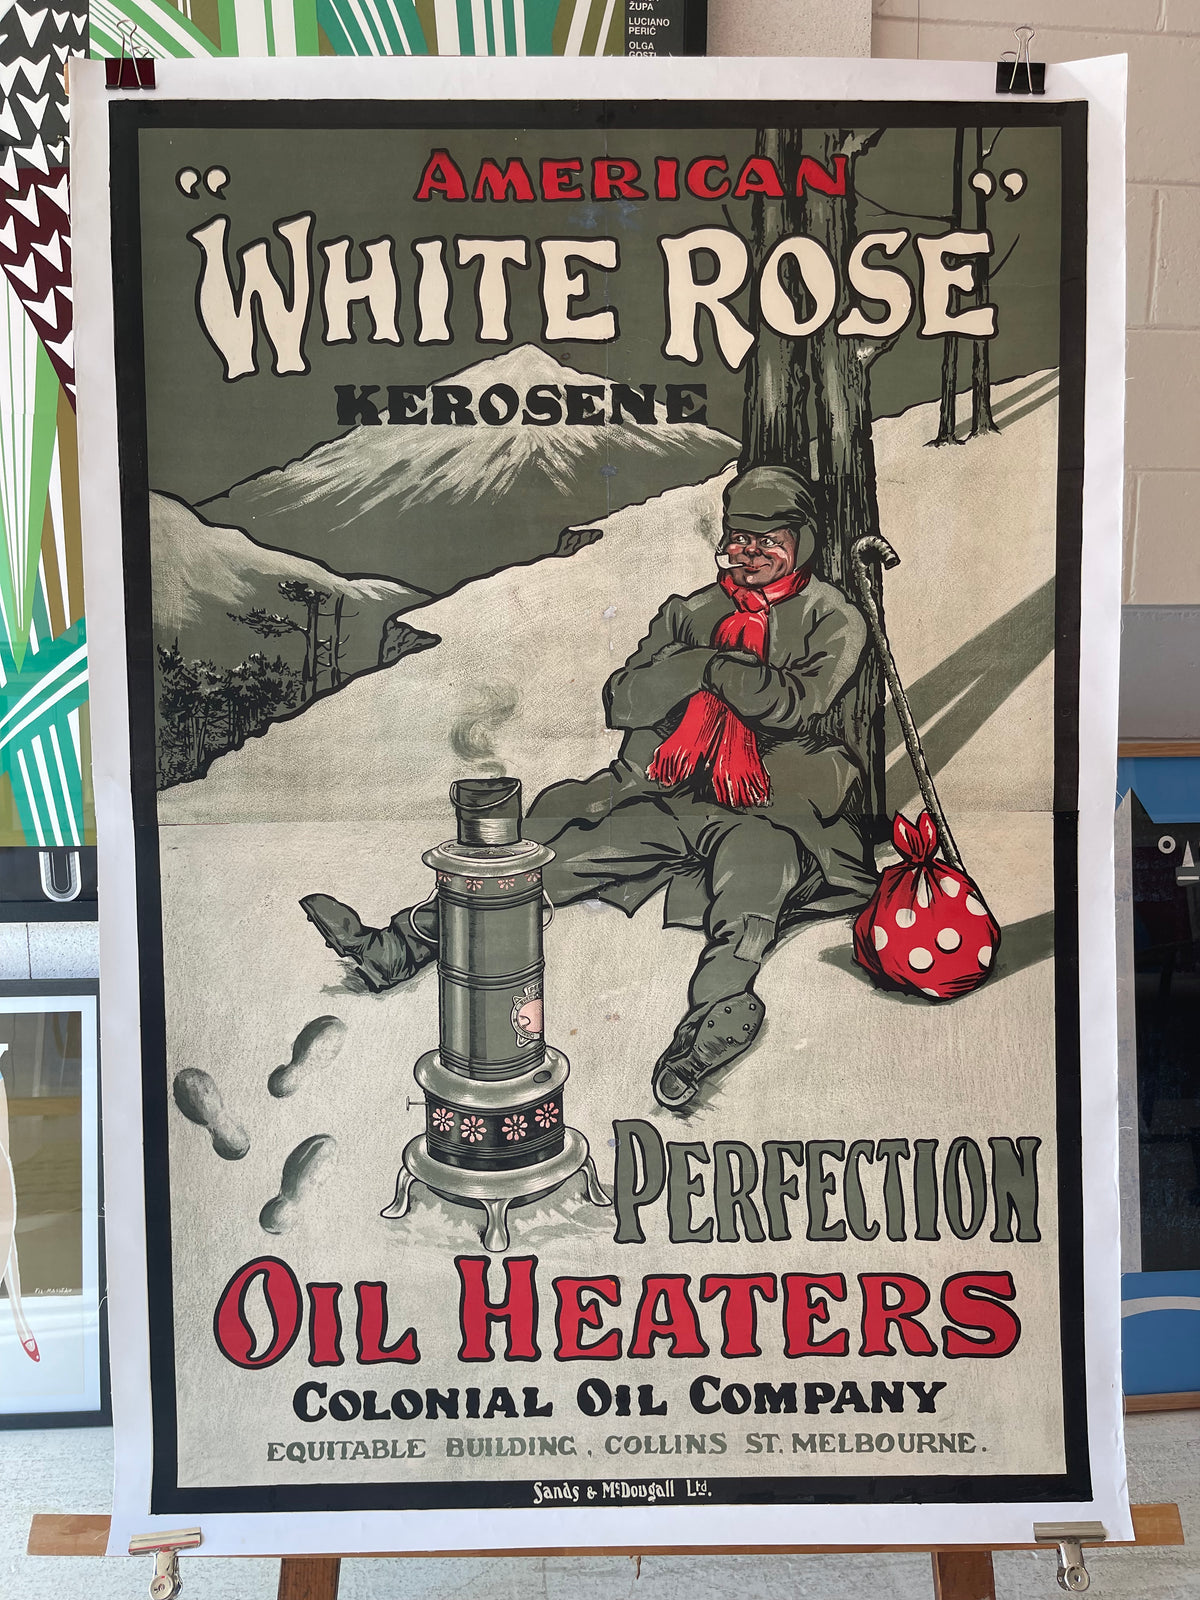 American 'White Rose' Kerosene Oil Heater Advert